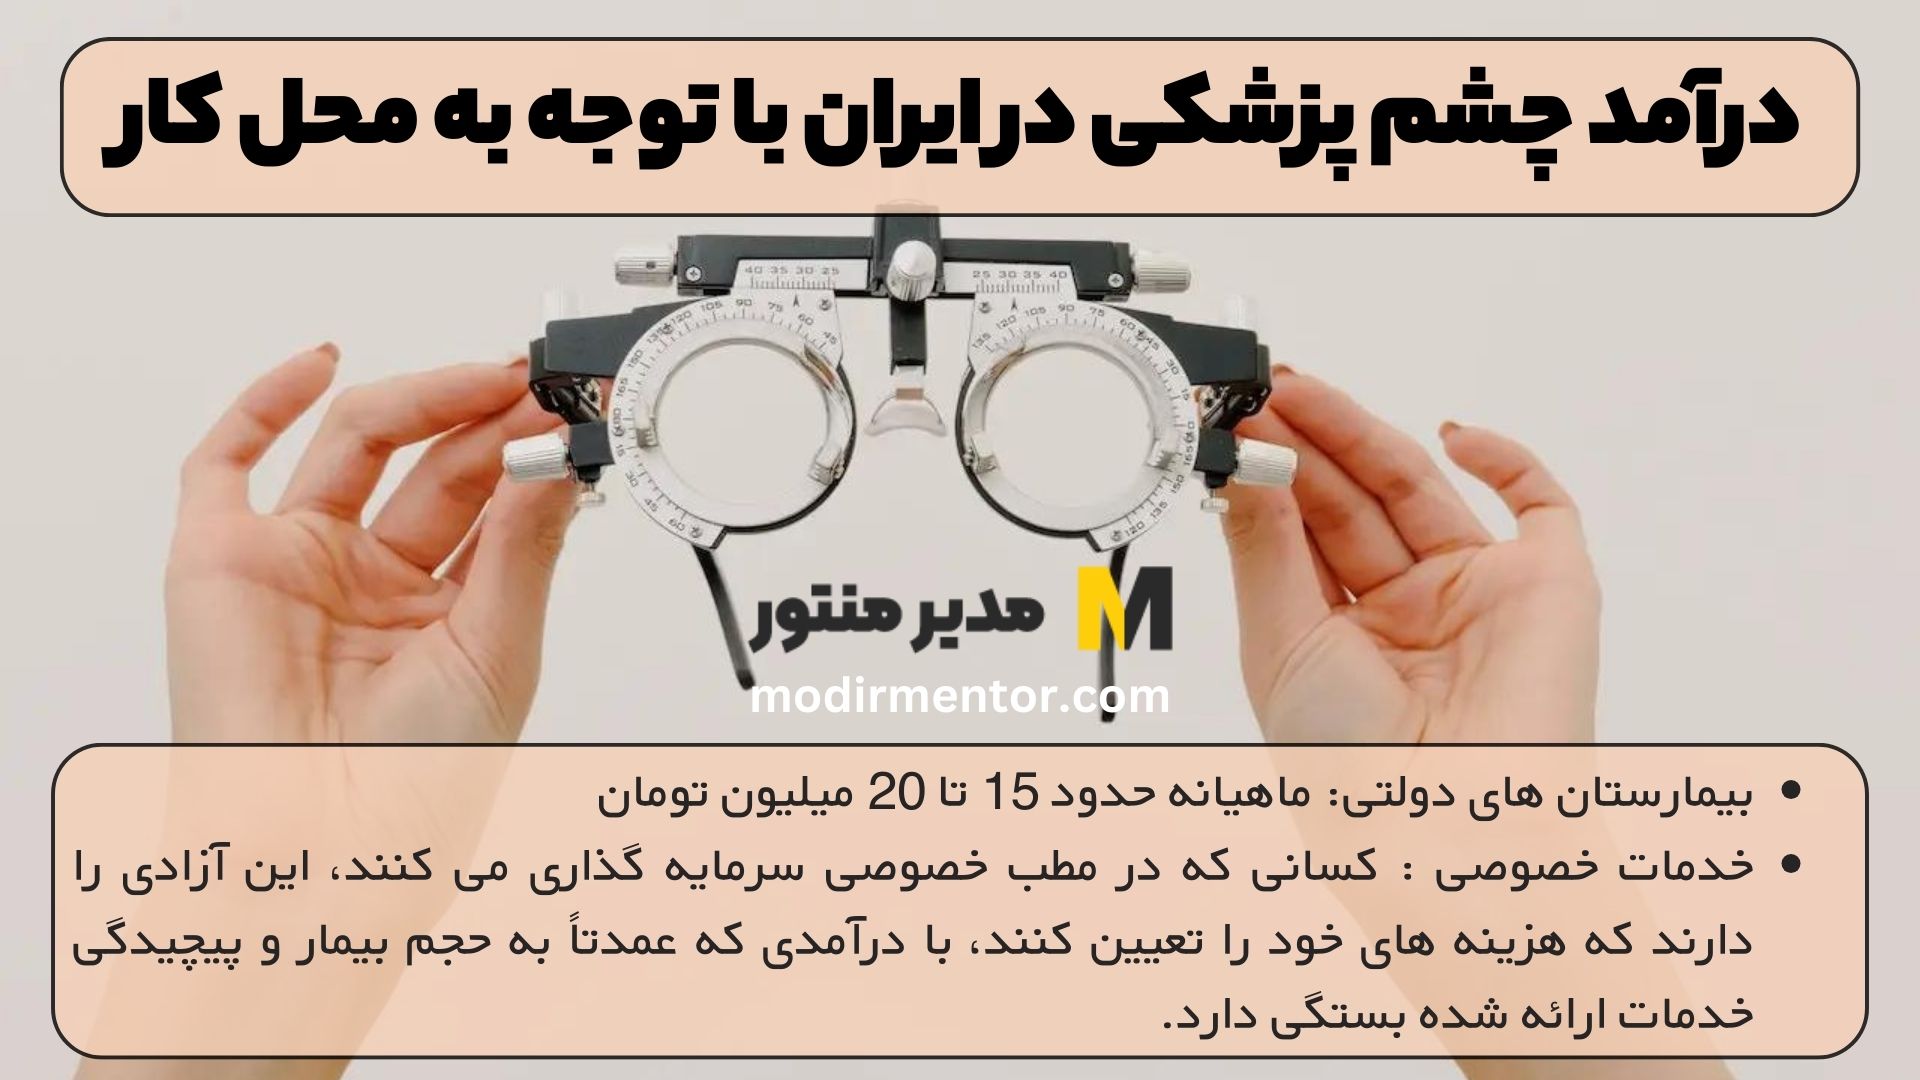 درآمد چشم پزشکی در ایران با توجه به محل کار